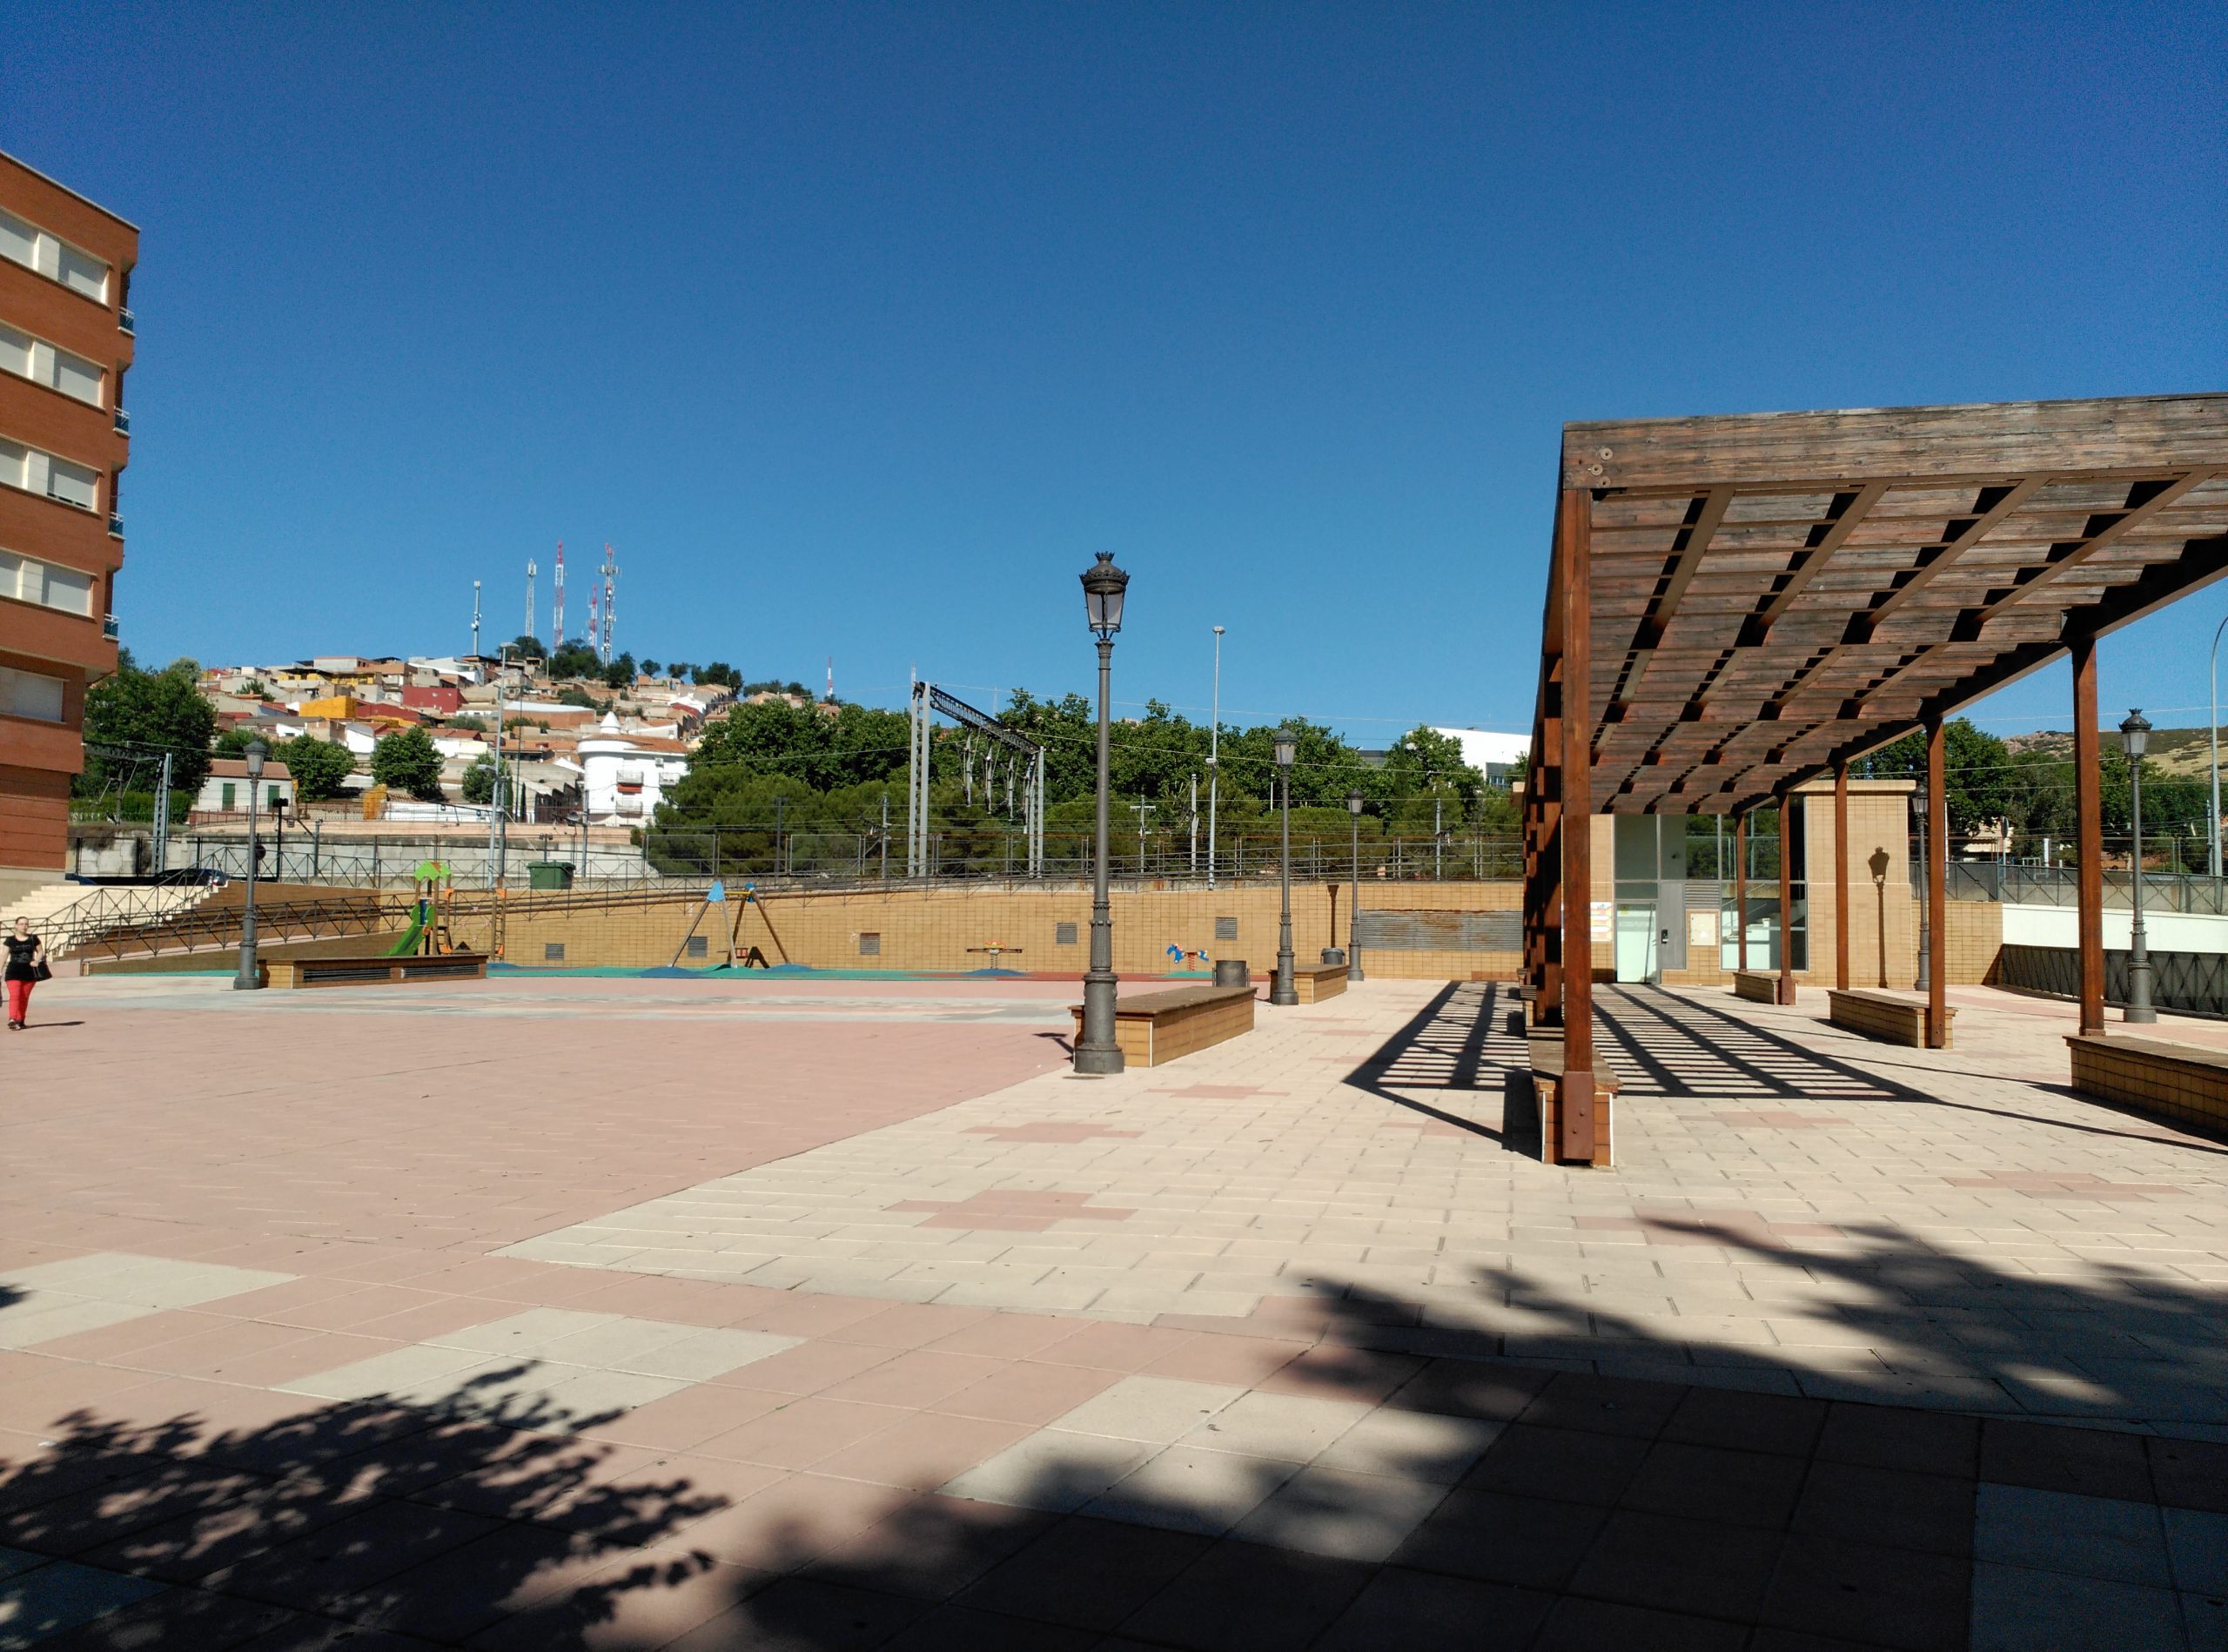 La actual Plaza Ramón y Cajal, situada en la antigua Estación Fotografía F. Negrete